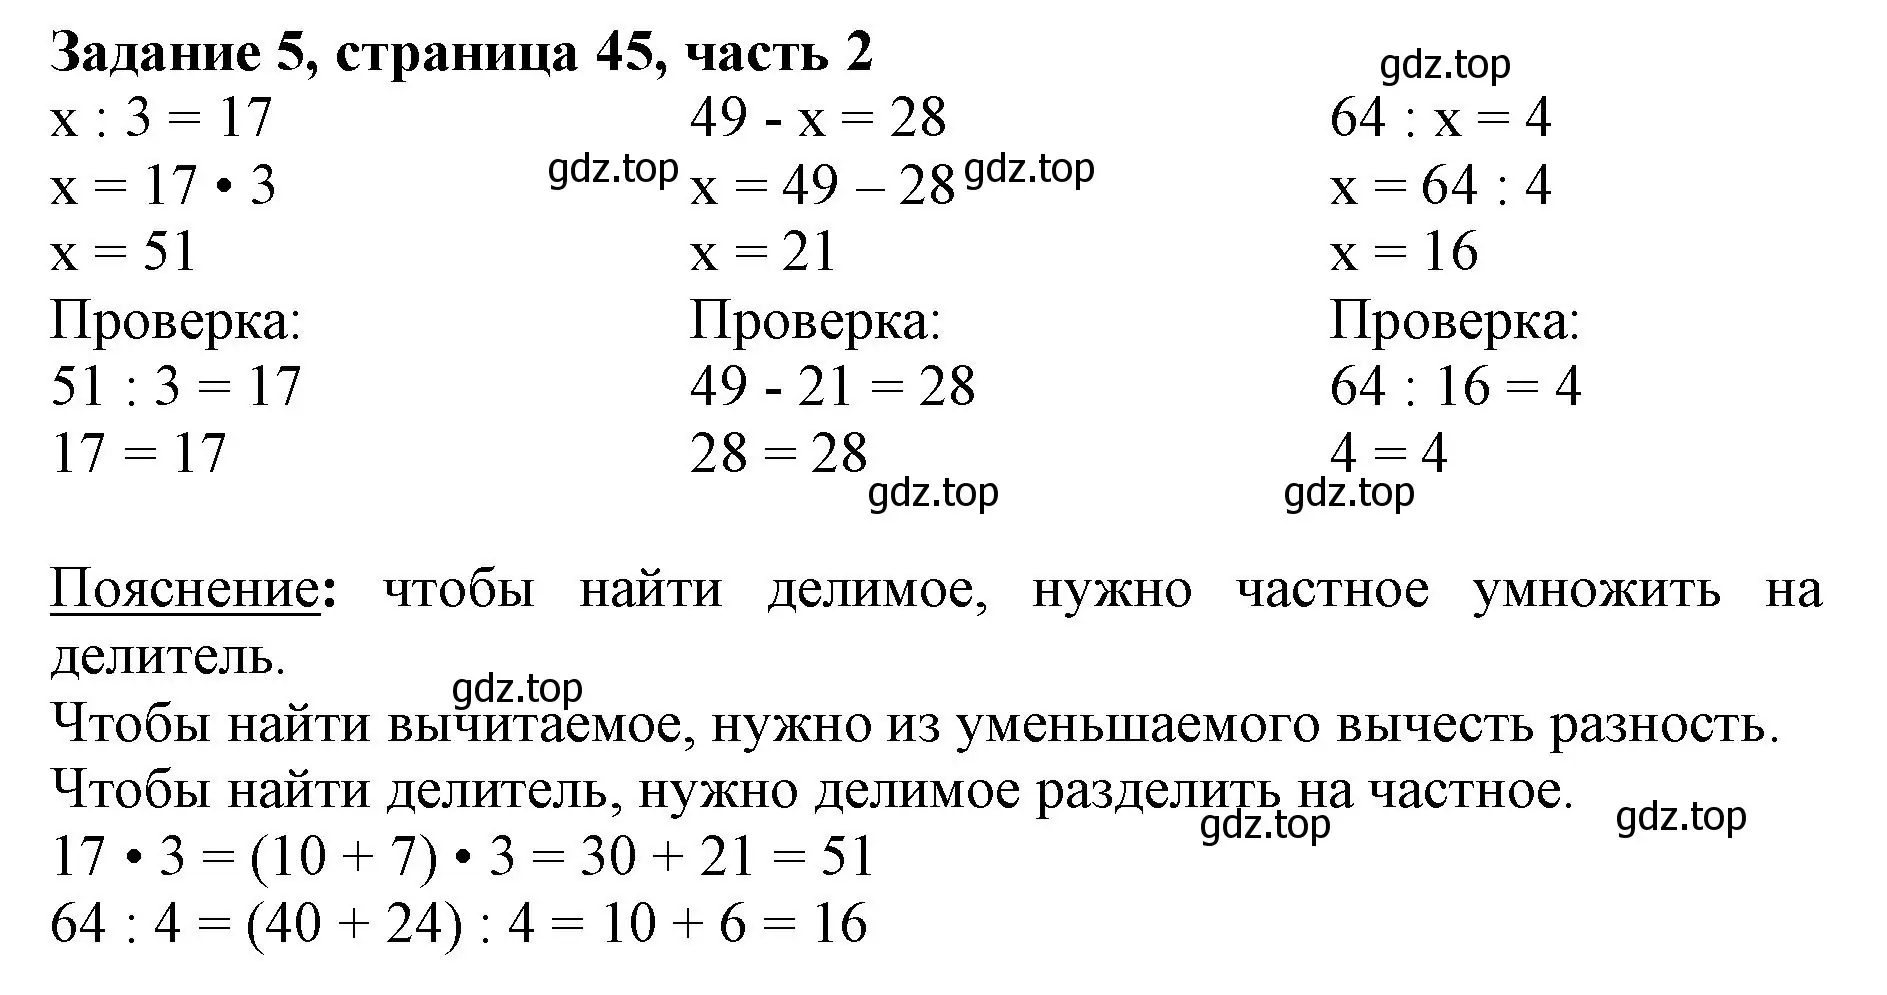 Решение номер 5 (страница 45) гдз по математике 3 класс Моро, Бантова, учебник 2 часть